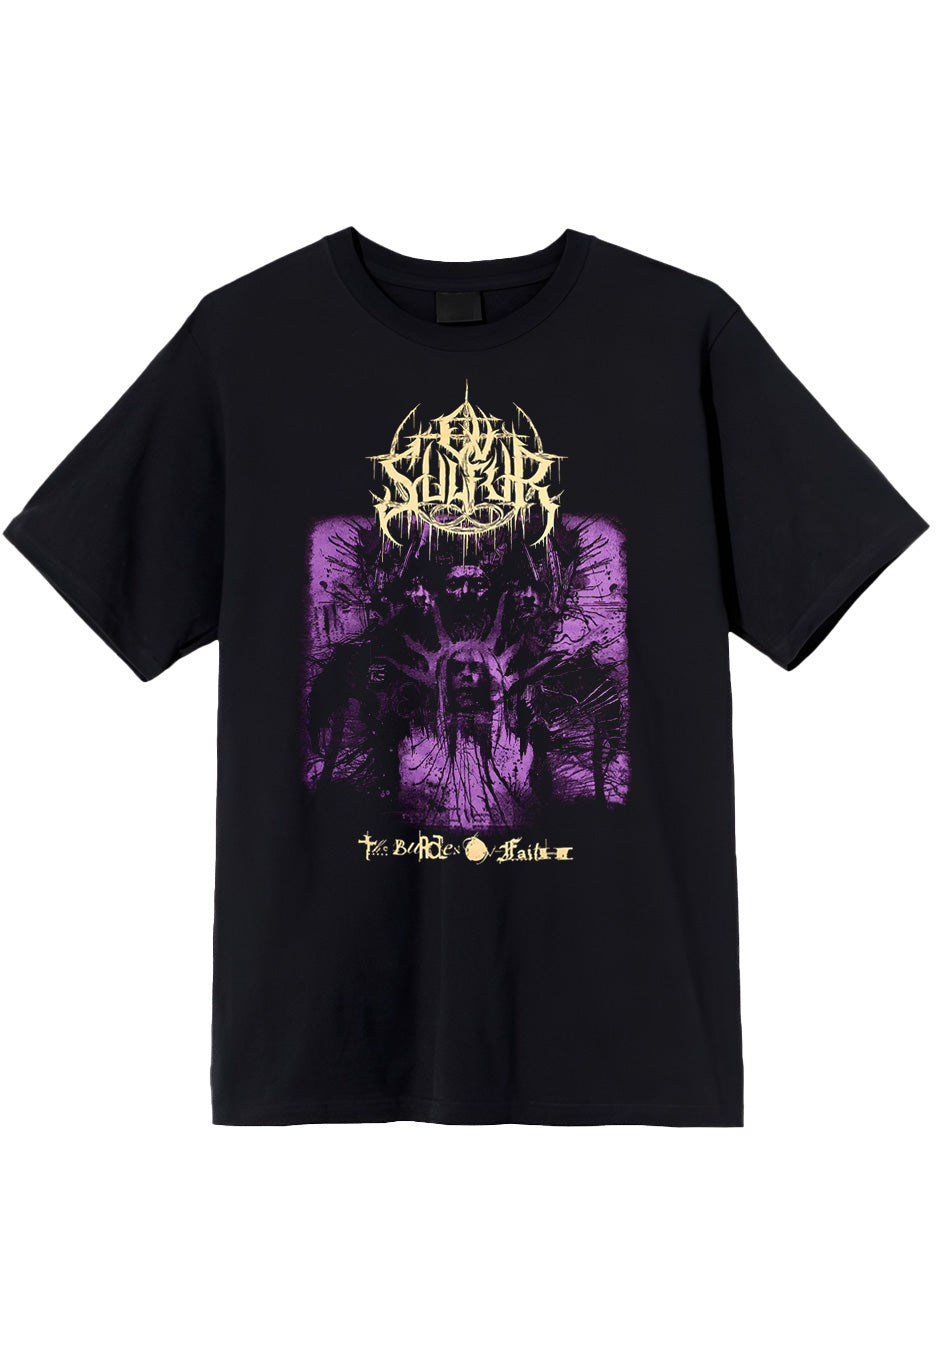 Ov Sulfur - The Burden Of Faith - T-Shirt